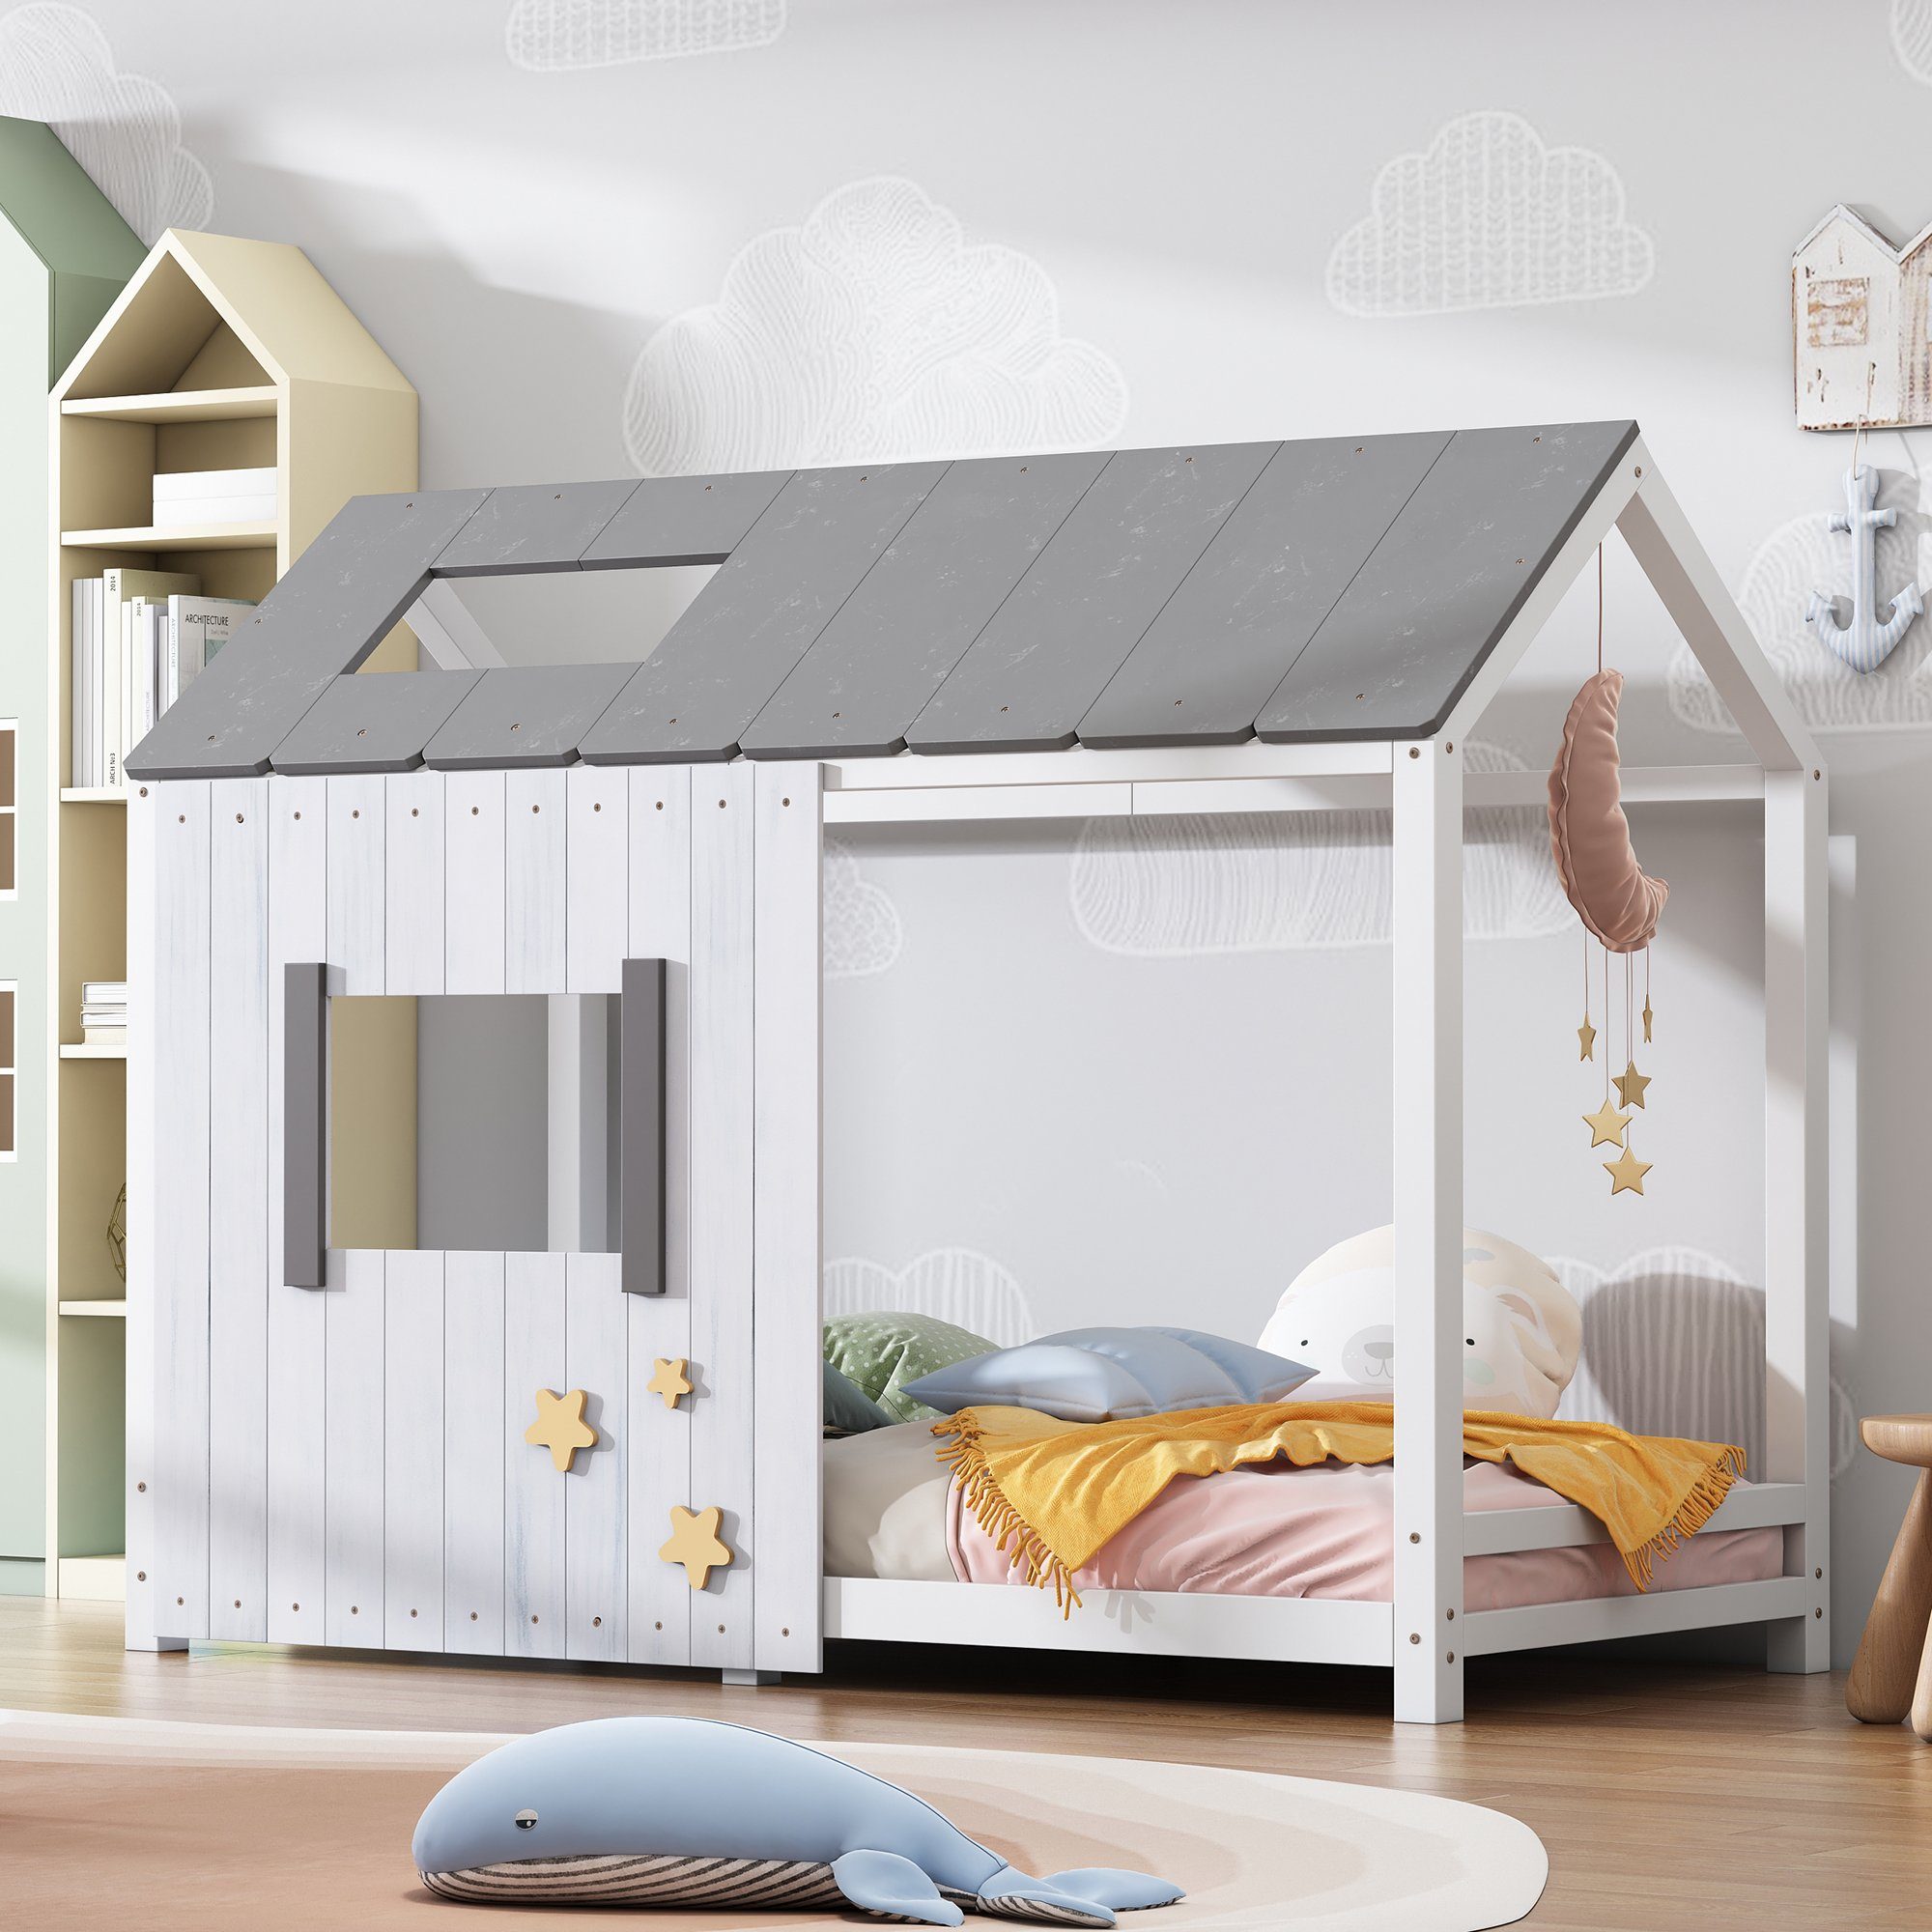 Flieks Kinderbett (mit Rausfallschutz & Dach & Fenster), Spielbett  Massivholz Einzelbett Hausbett, Grau&Weiß 90x200cm